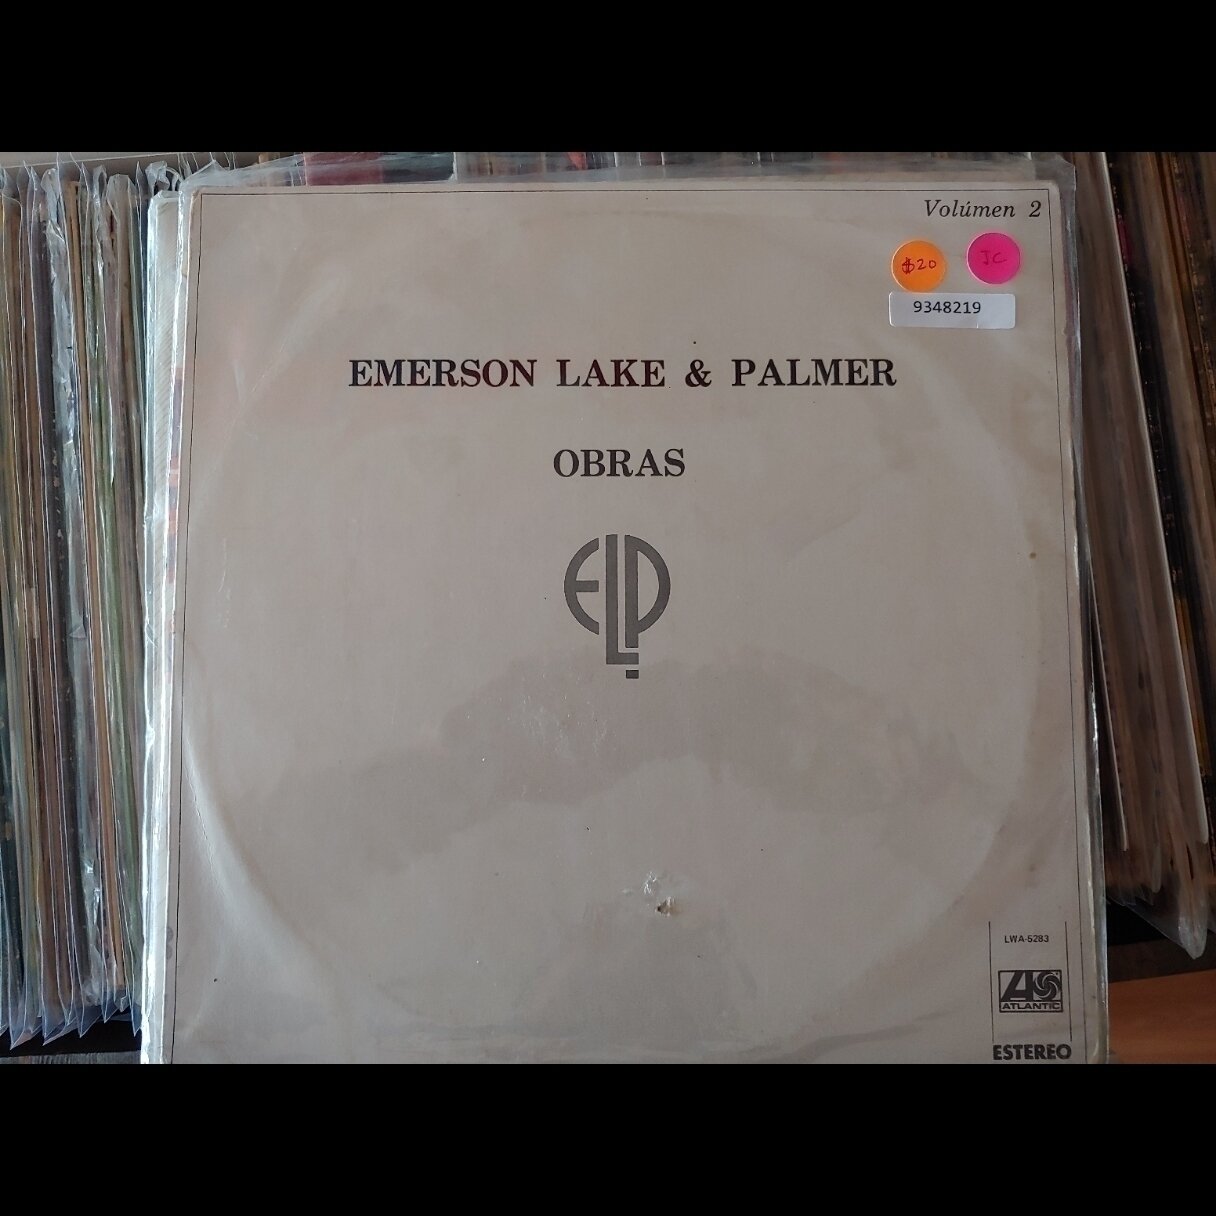 Emerson Lake & Palmer - Obras